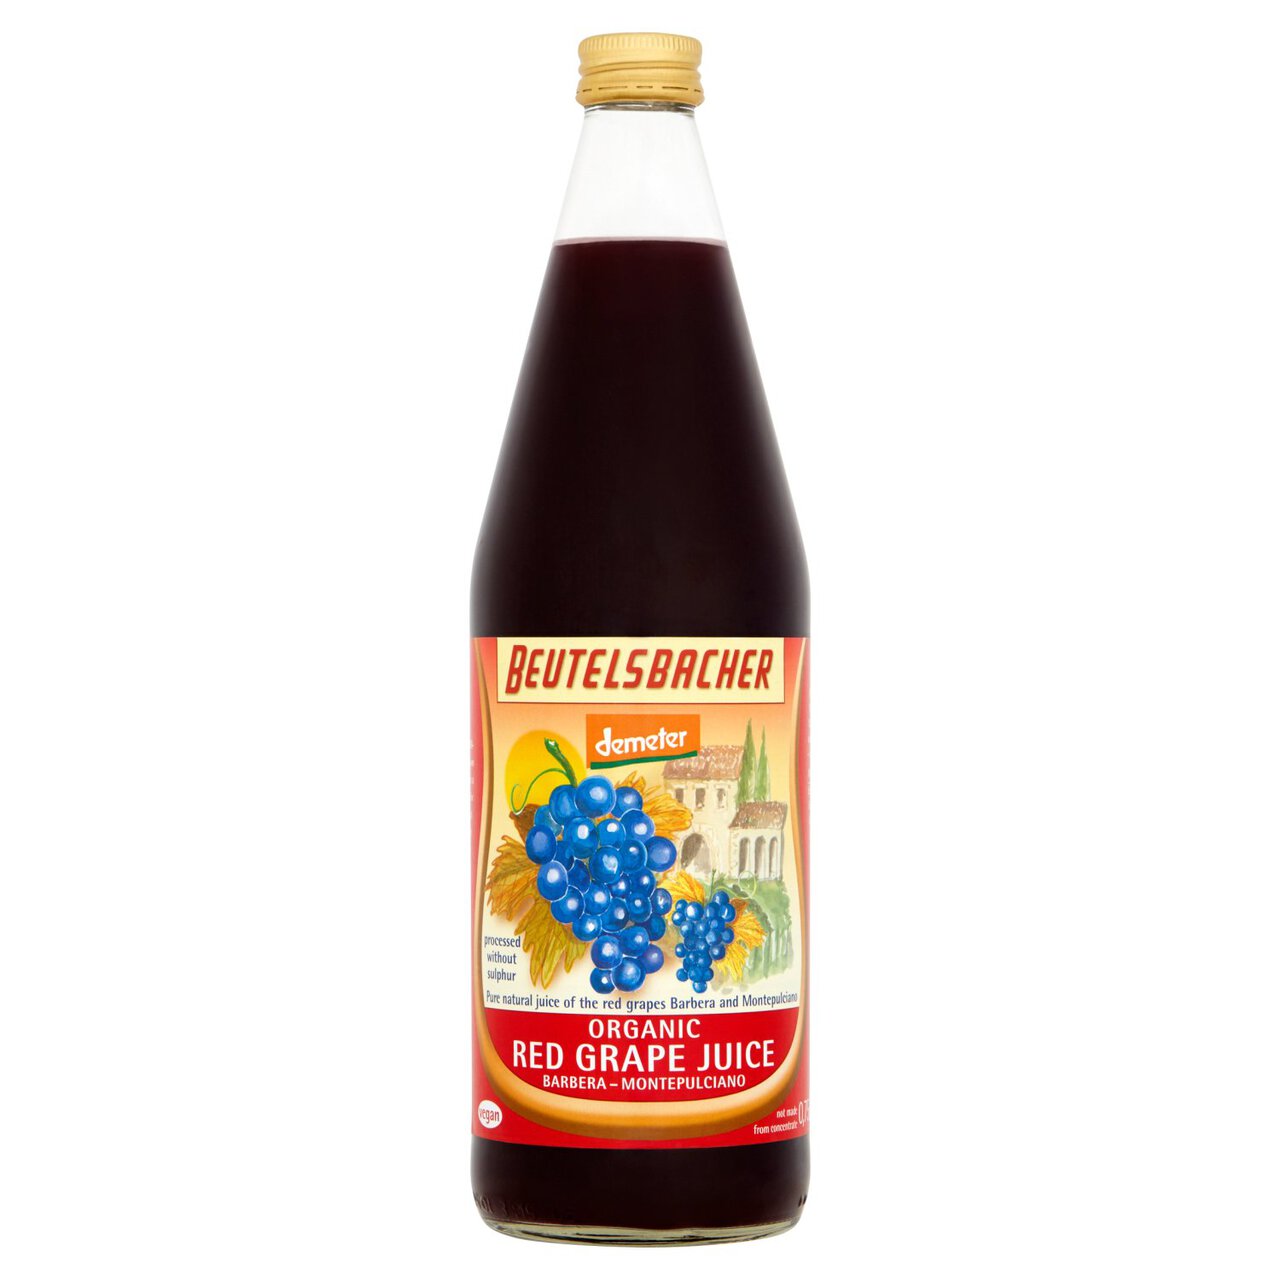 Beutelsbacher Demeter Organic Red Grape Juice 750ml